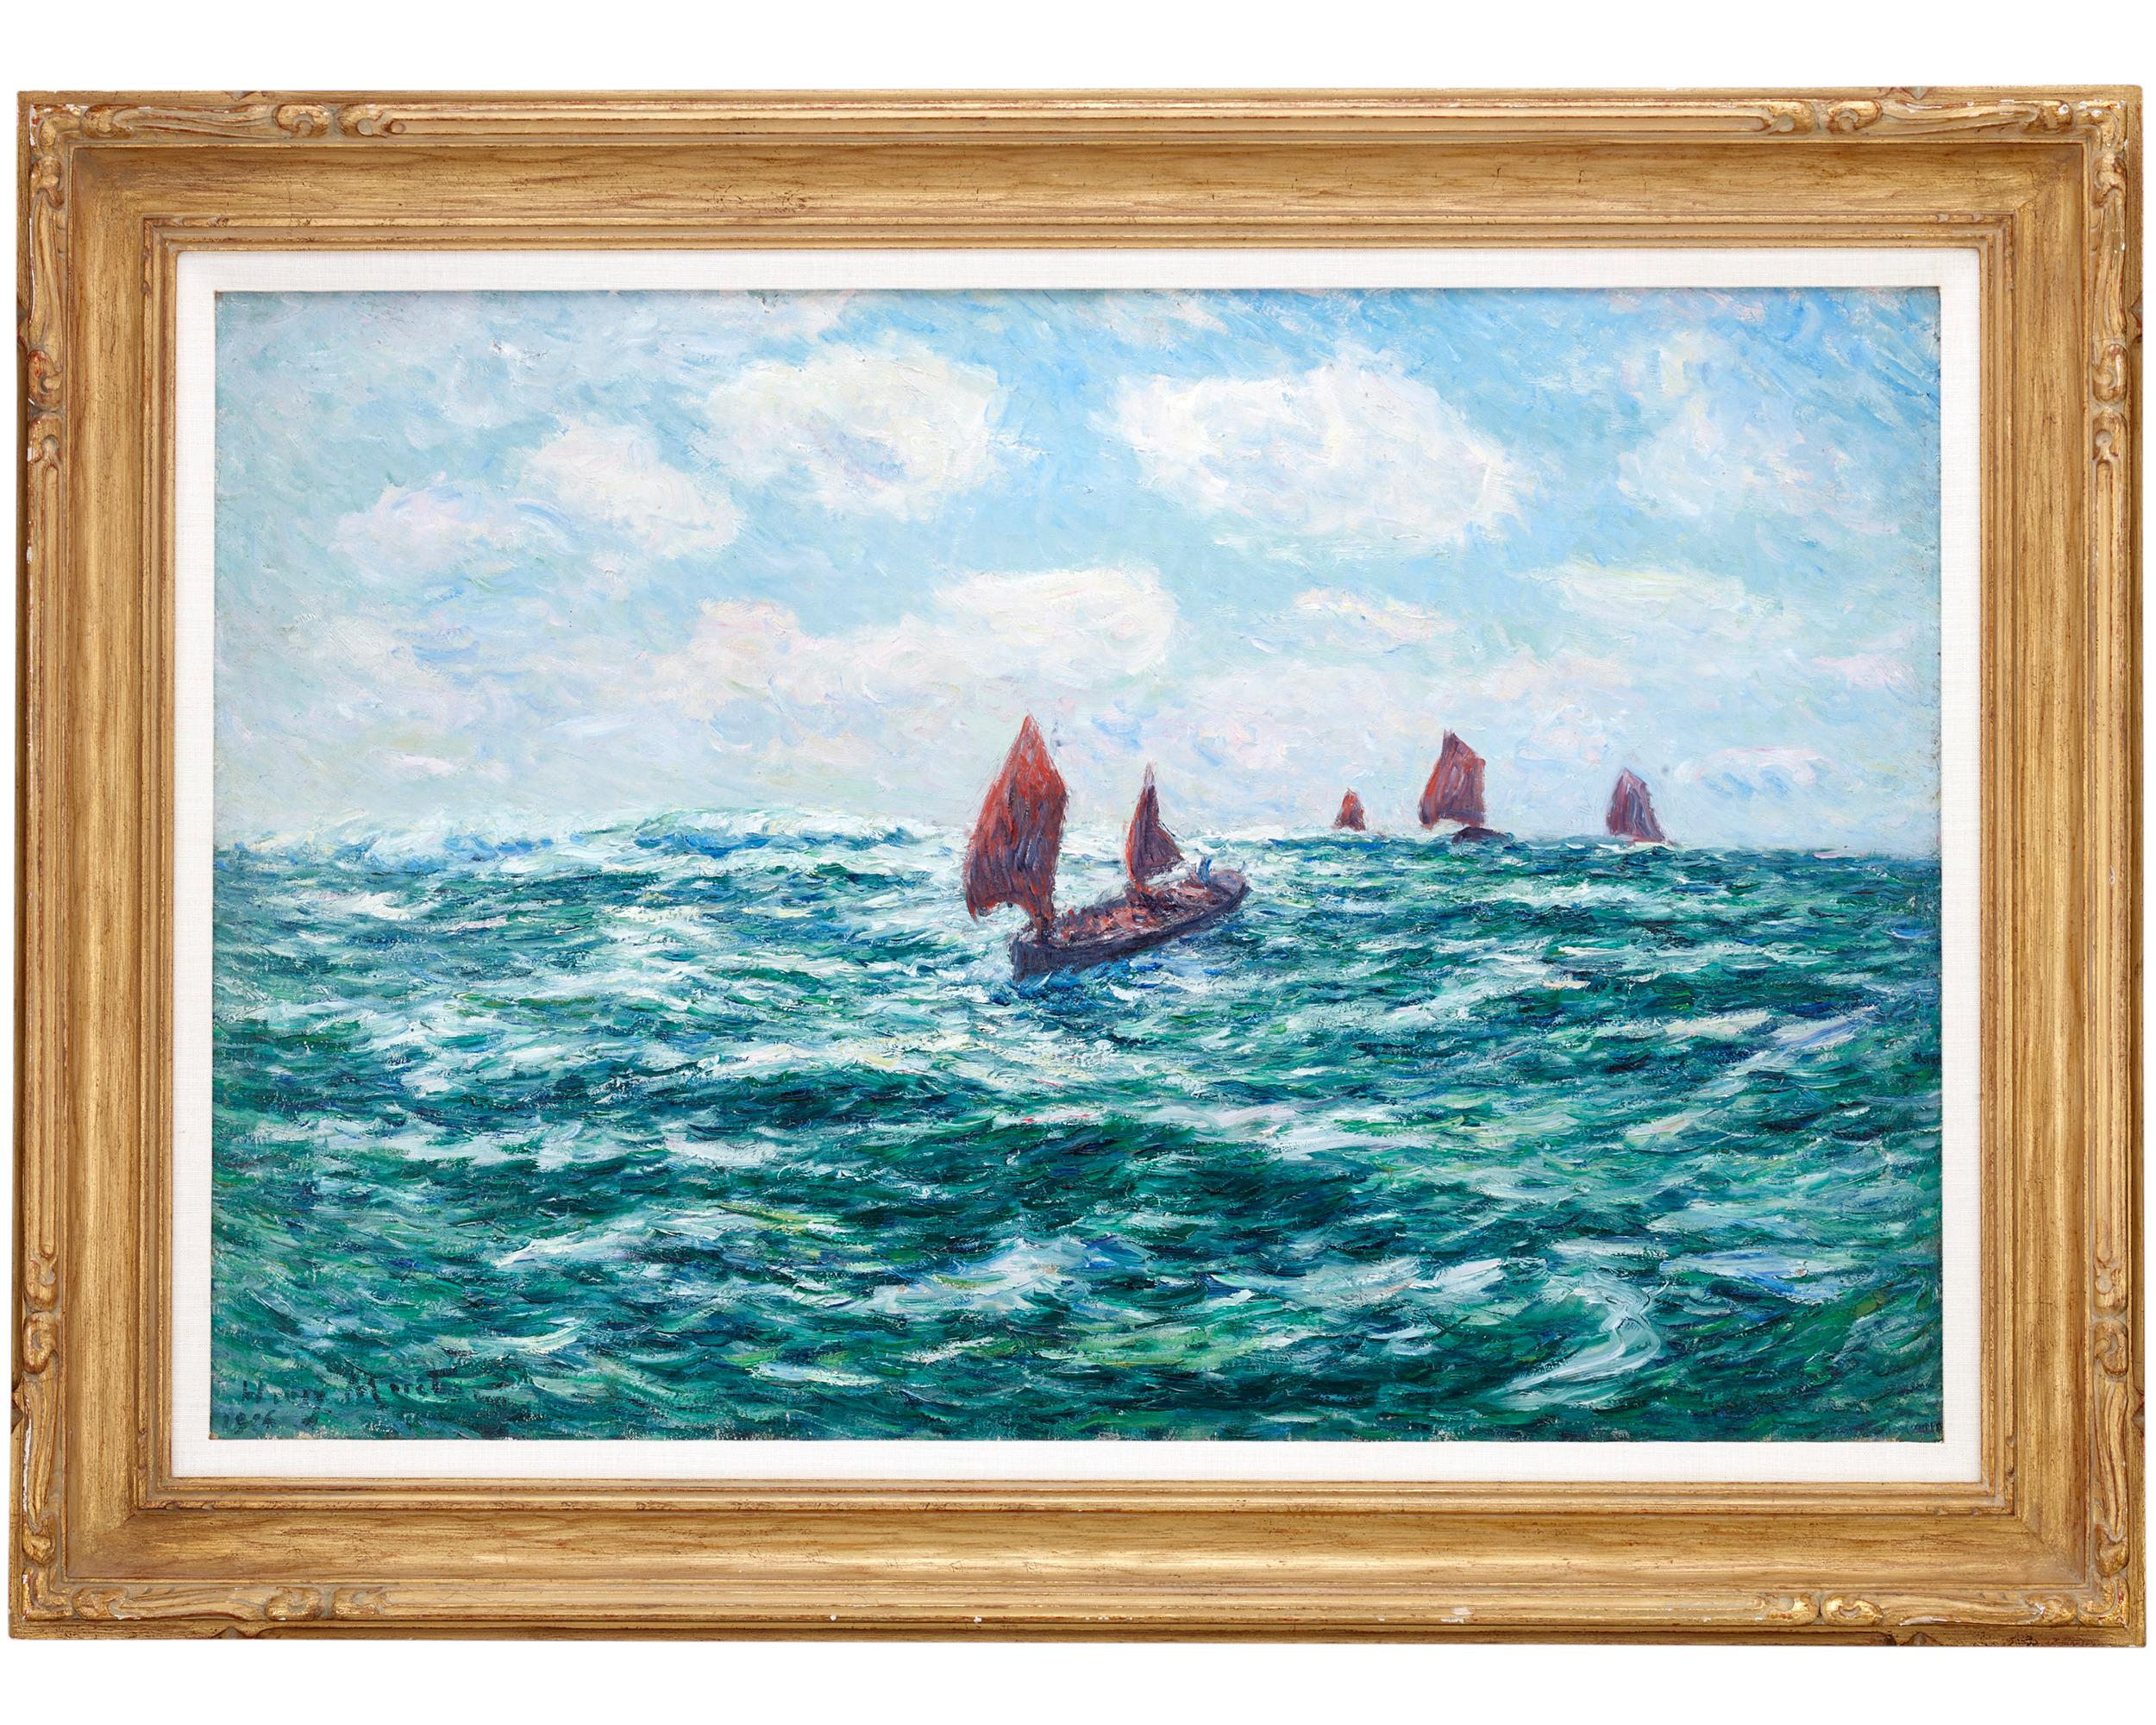 Bateaux de pêche, Audierne (Fishing Boat, Audierne) - Painting by Henry Moret